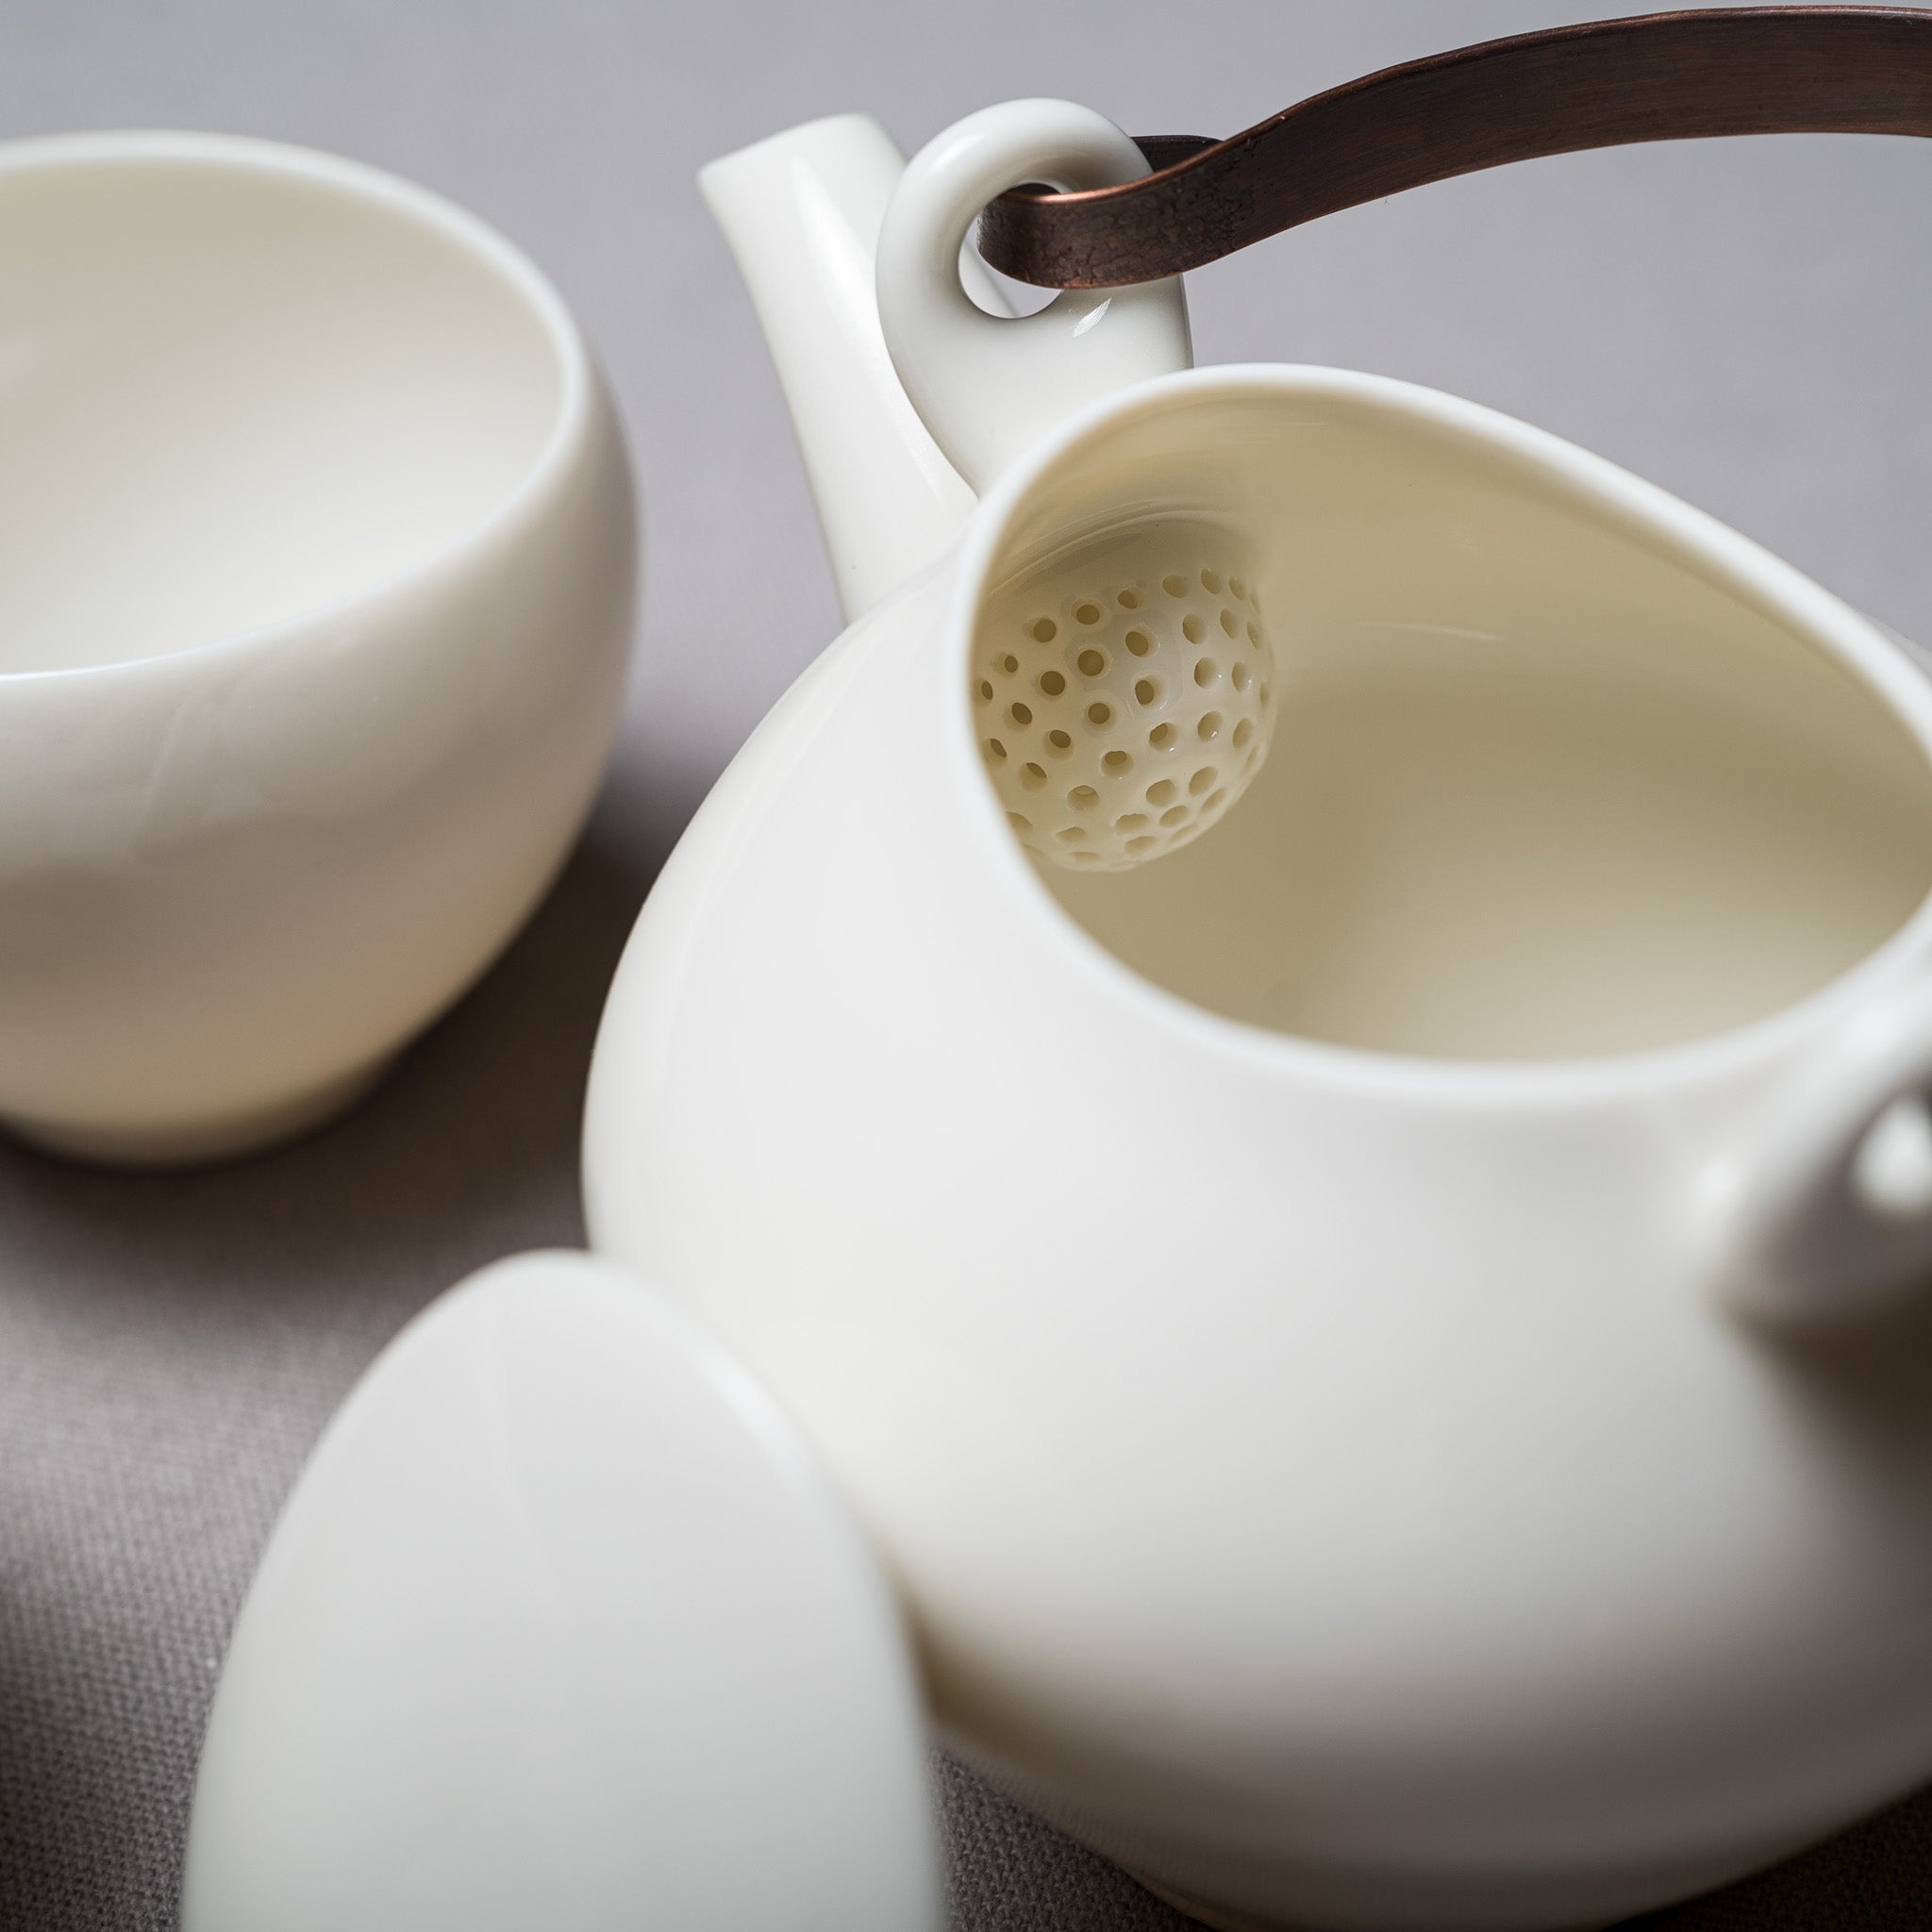 Sou-Sou Teapot Set - One Pot Two Cups / 蒼爽 ティーセット